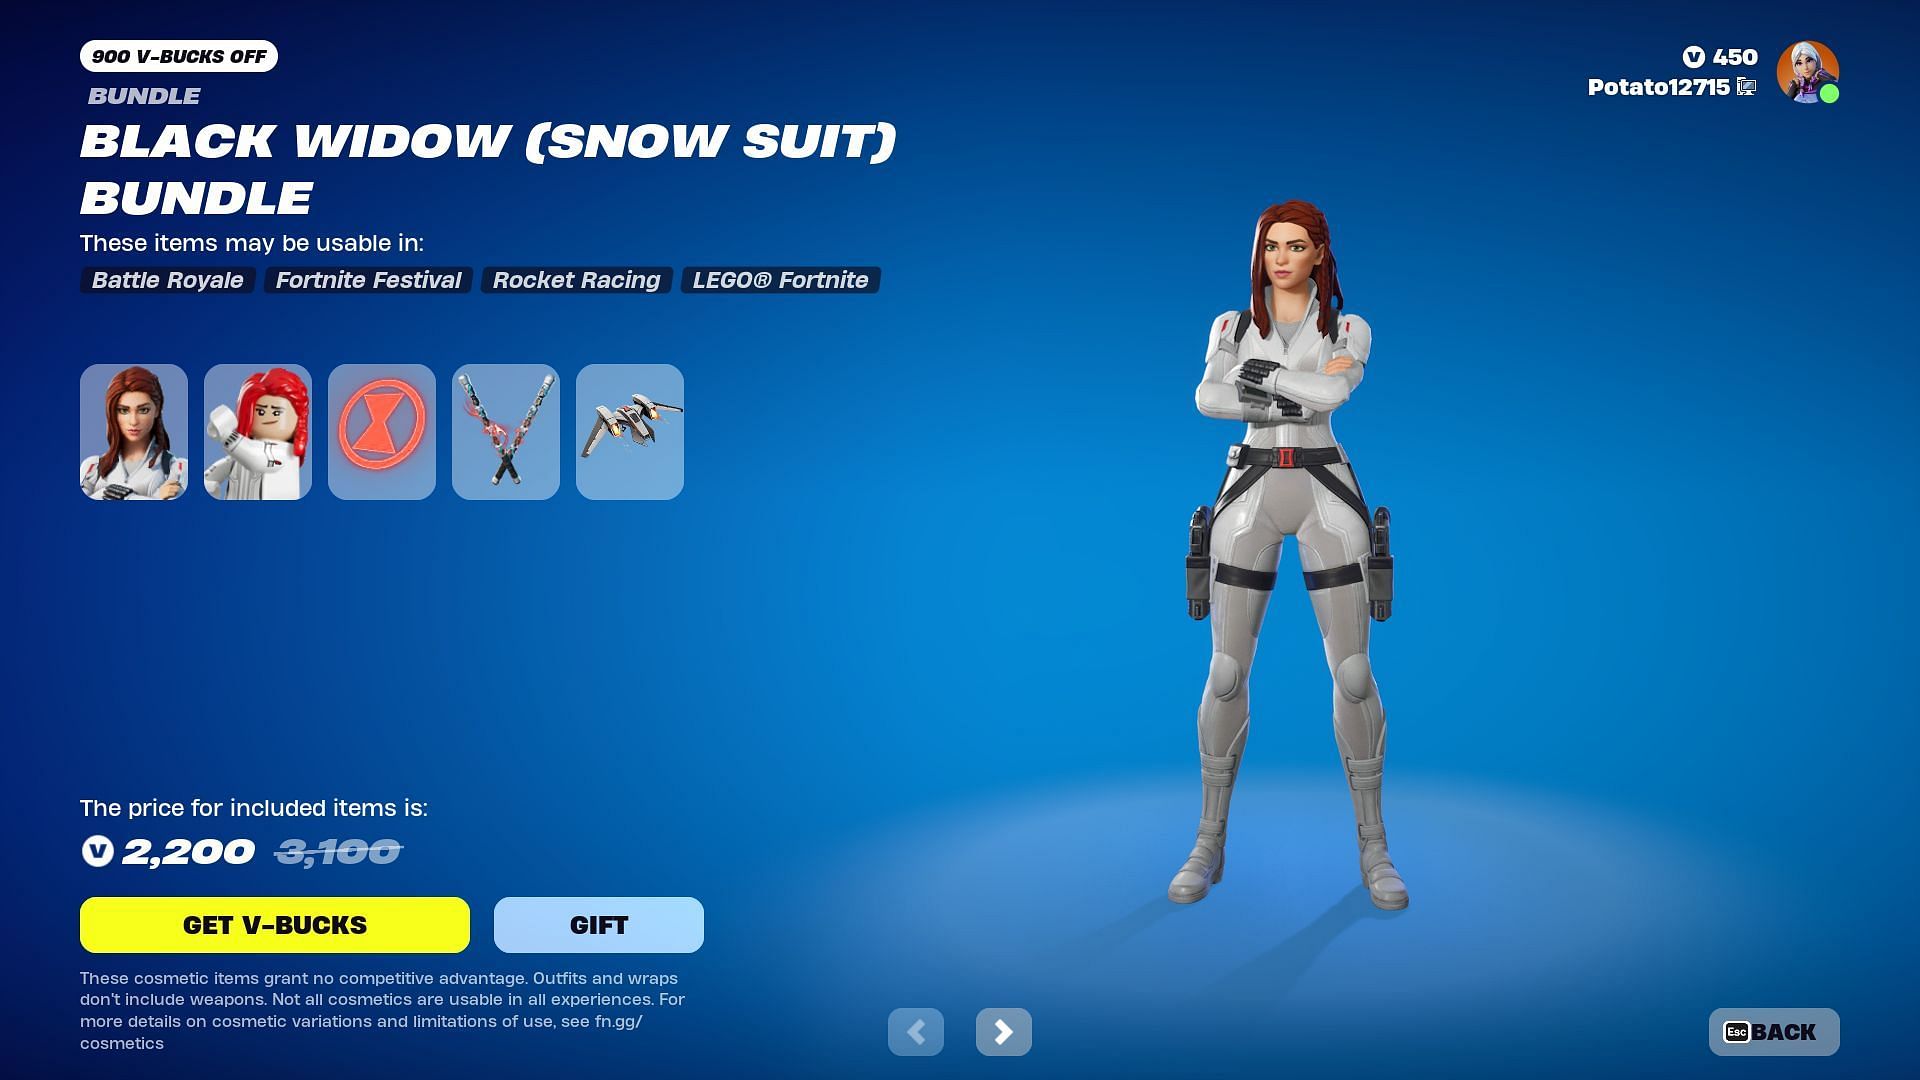 The Black Widow (Snow Suit) Bundle (Image via Epic Games)